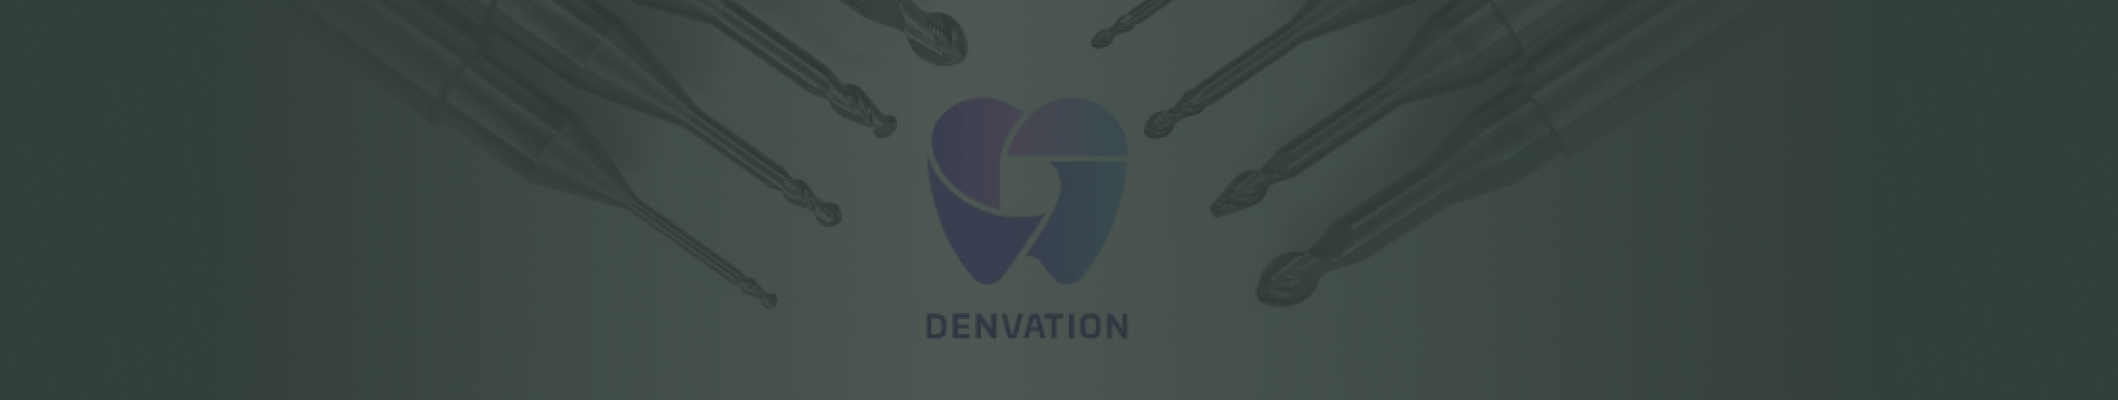 Denvationロゴとミリングバー